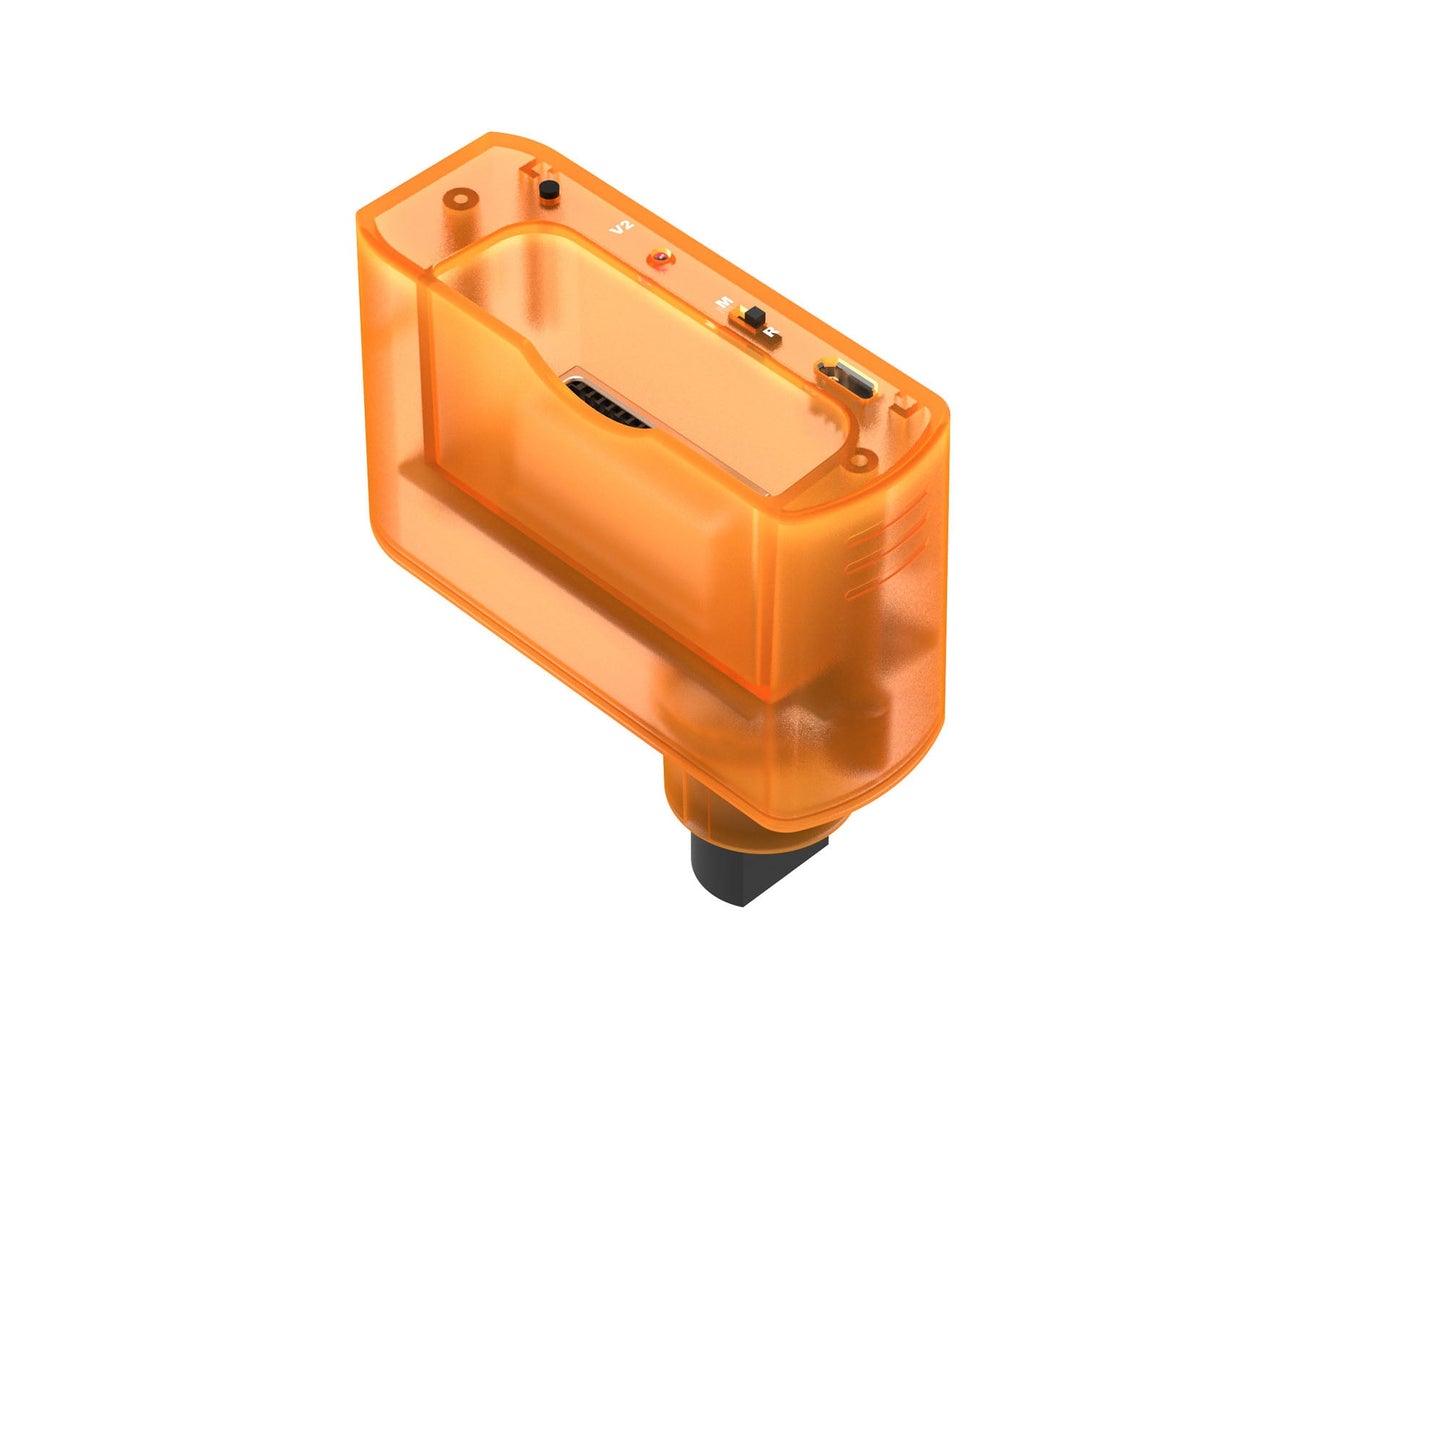 Tribute64 2.4GHz Wireless Controller - Orange Hawk (Daiei Hawks)